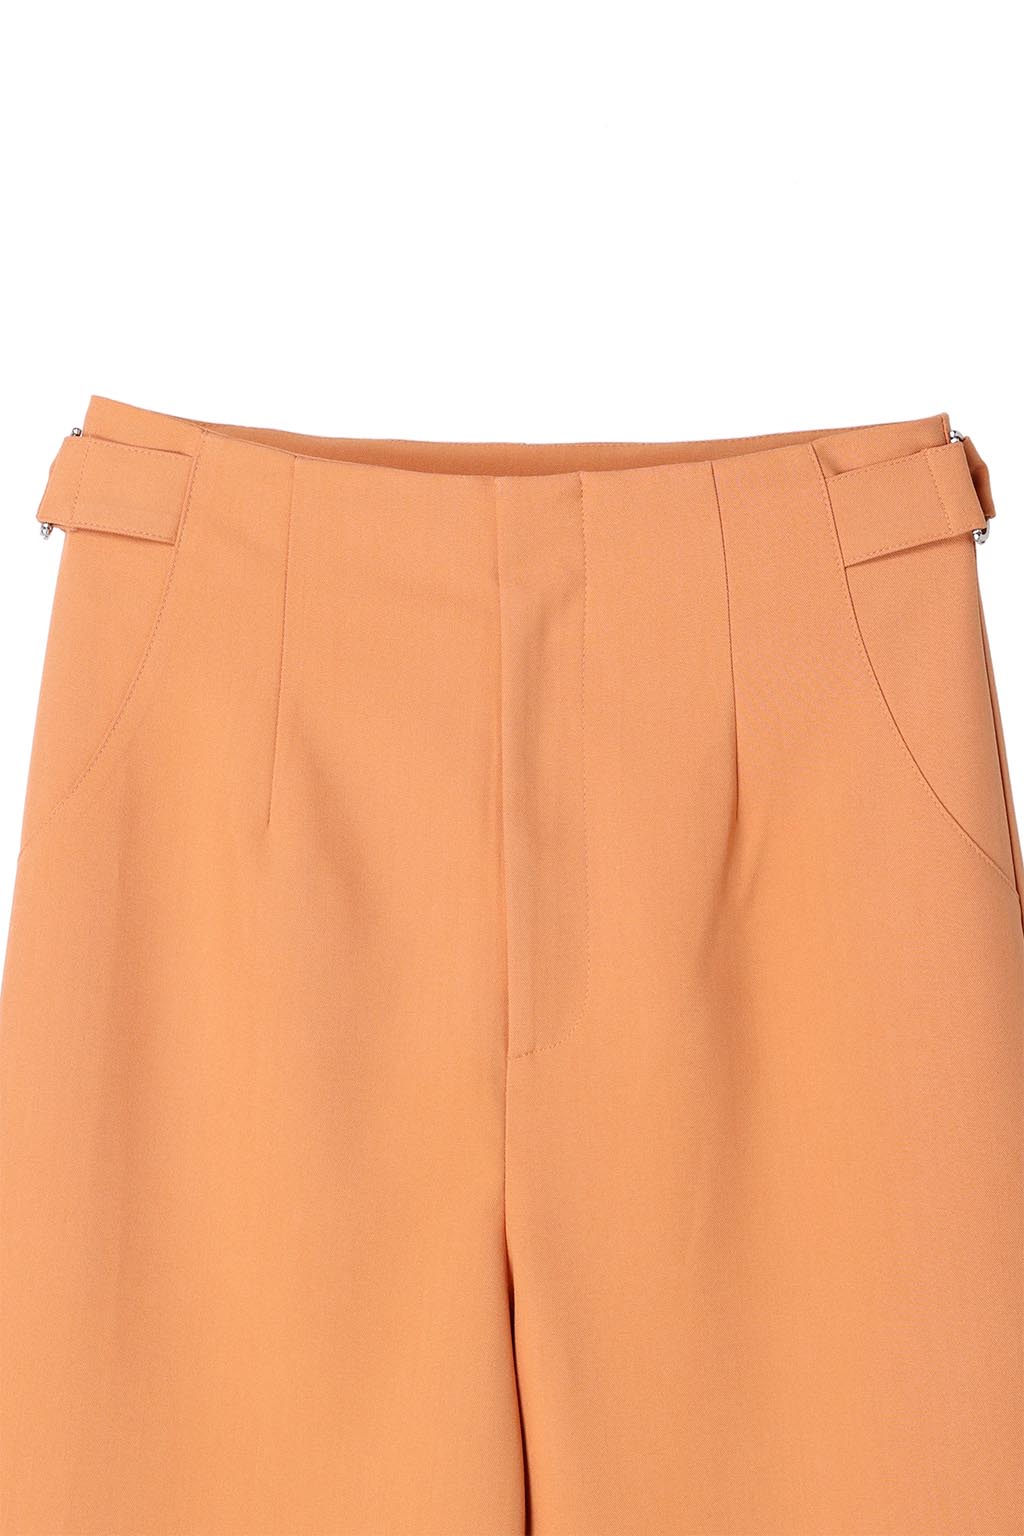 Waist Belted Color Pants Orange 9